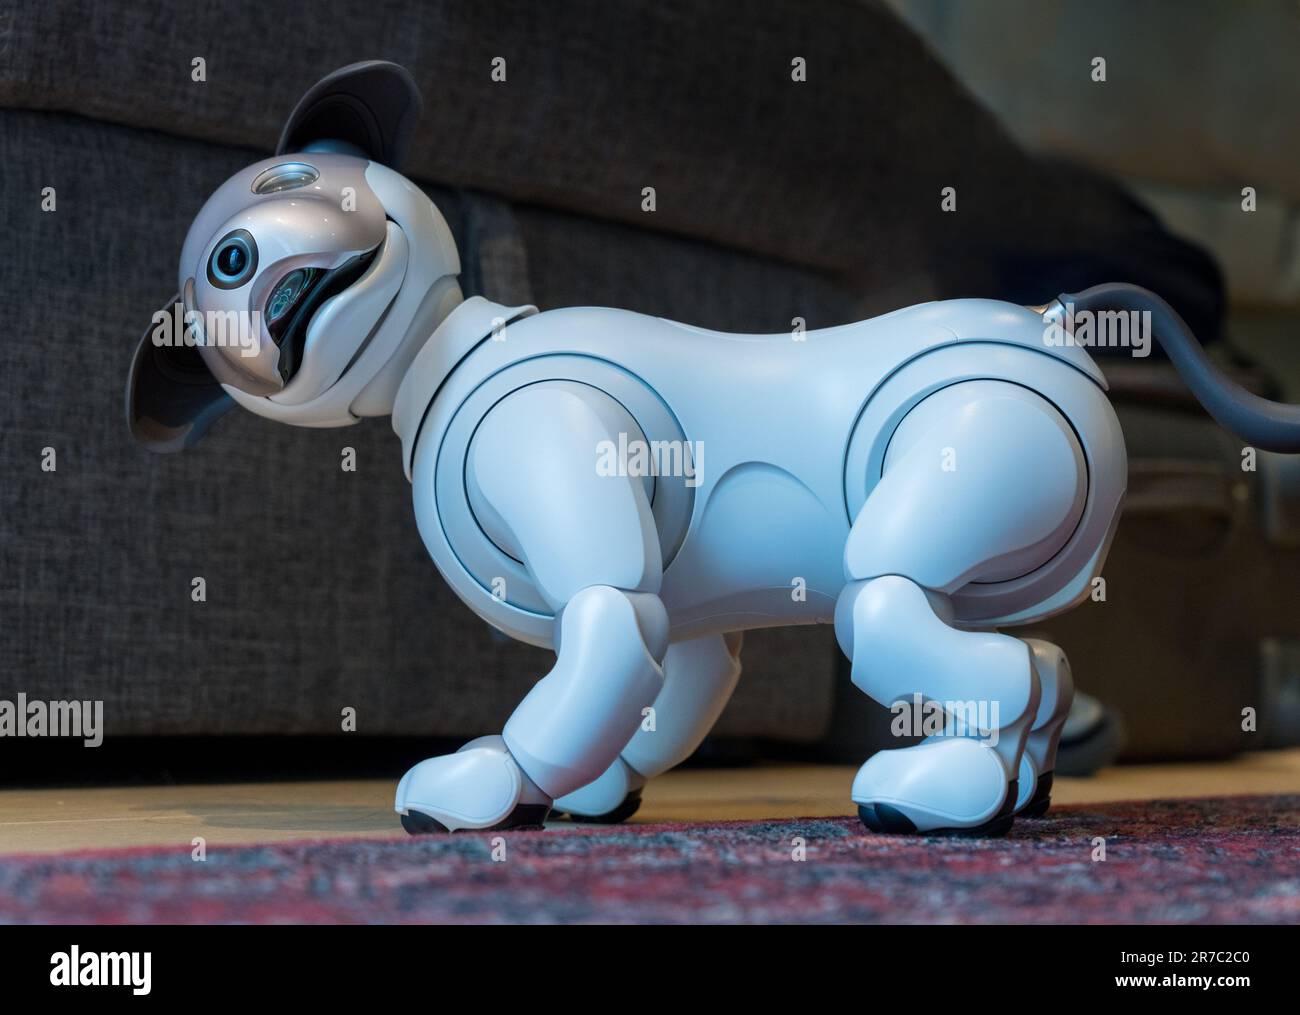 Woolwich, London - 14. Mai 2023: Sony Aibo Roboterhund steht auf dem Teppich und lächelt seinen Besitzer an Stockfoto